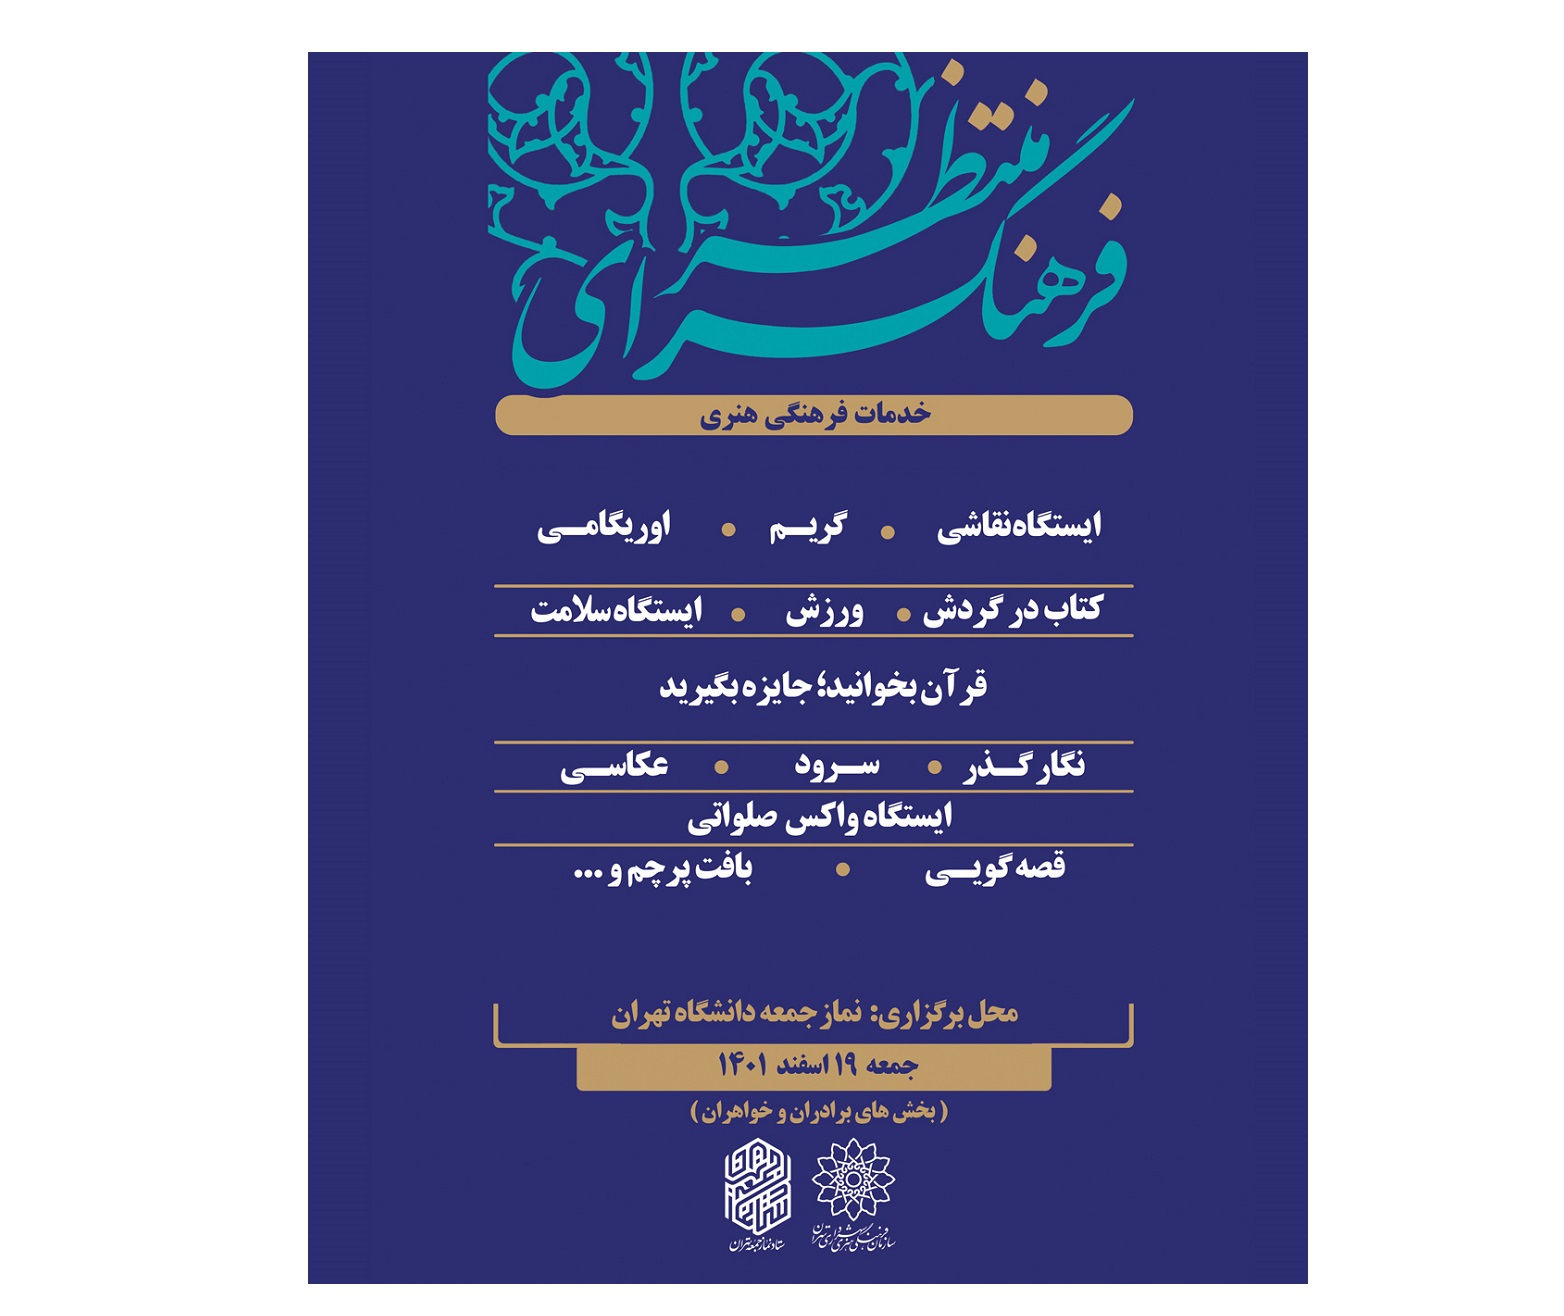 ارائه خدمات به نمازگزاران توسط فرهنگسراهای انقلاب اسلامی و قرآن